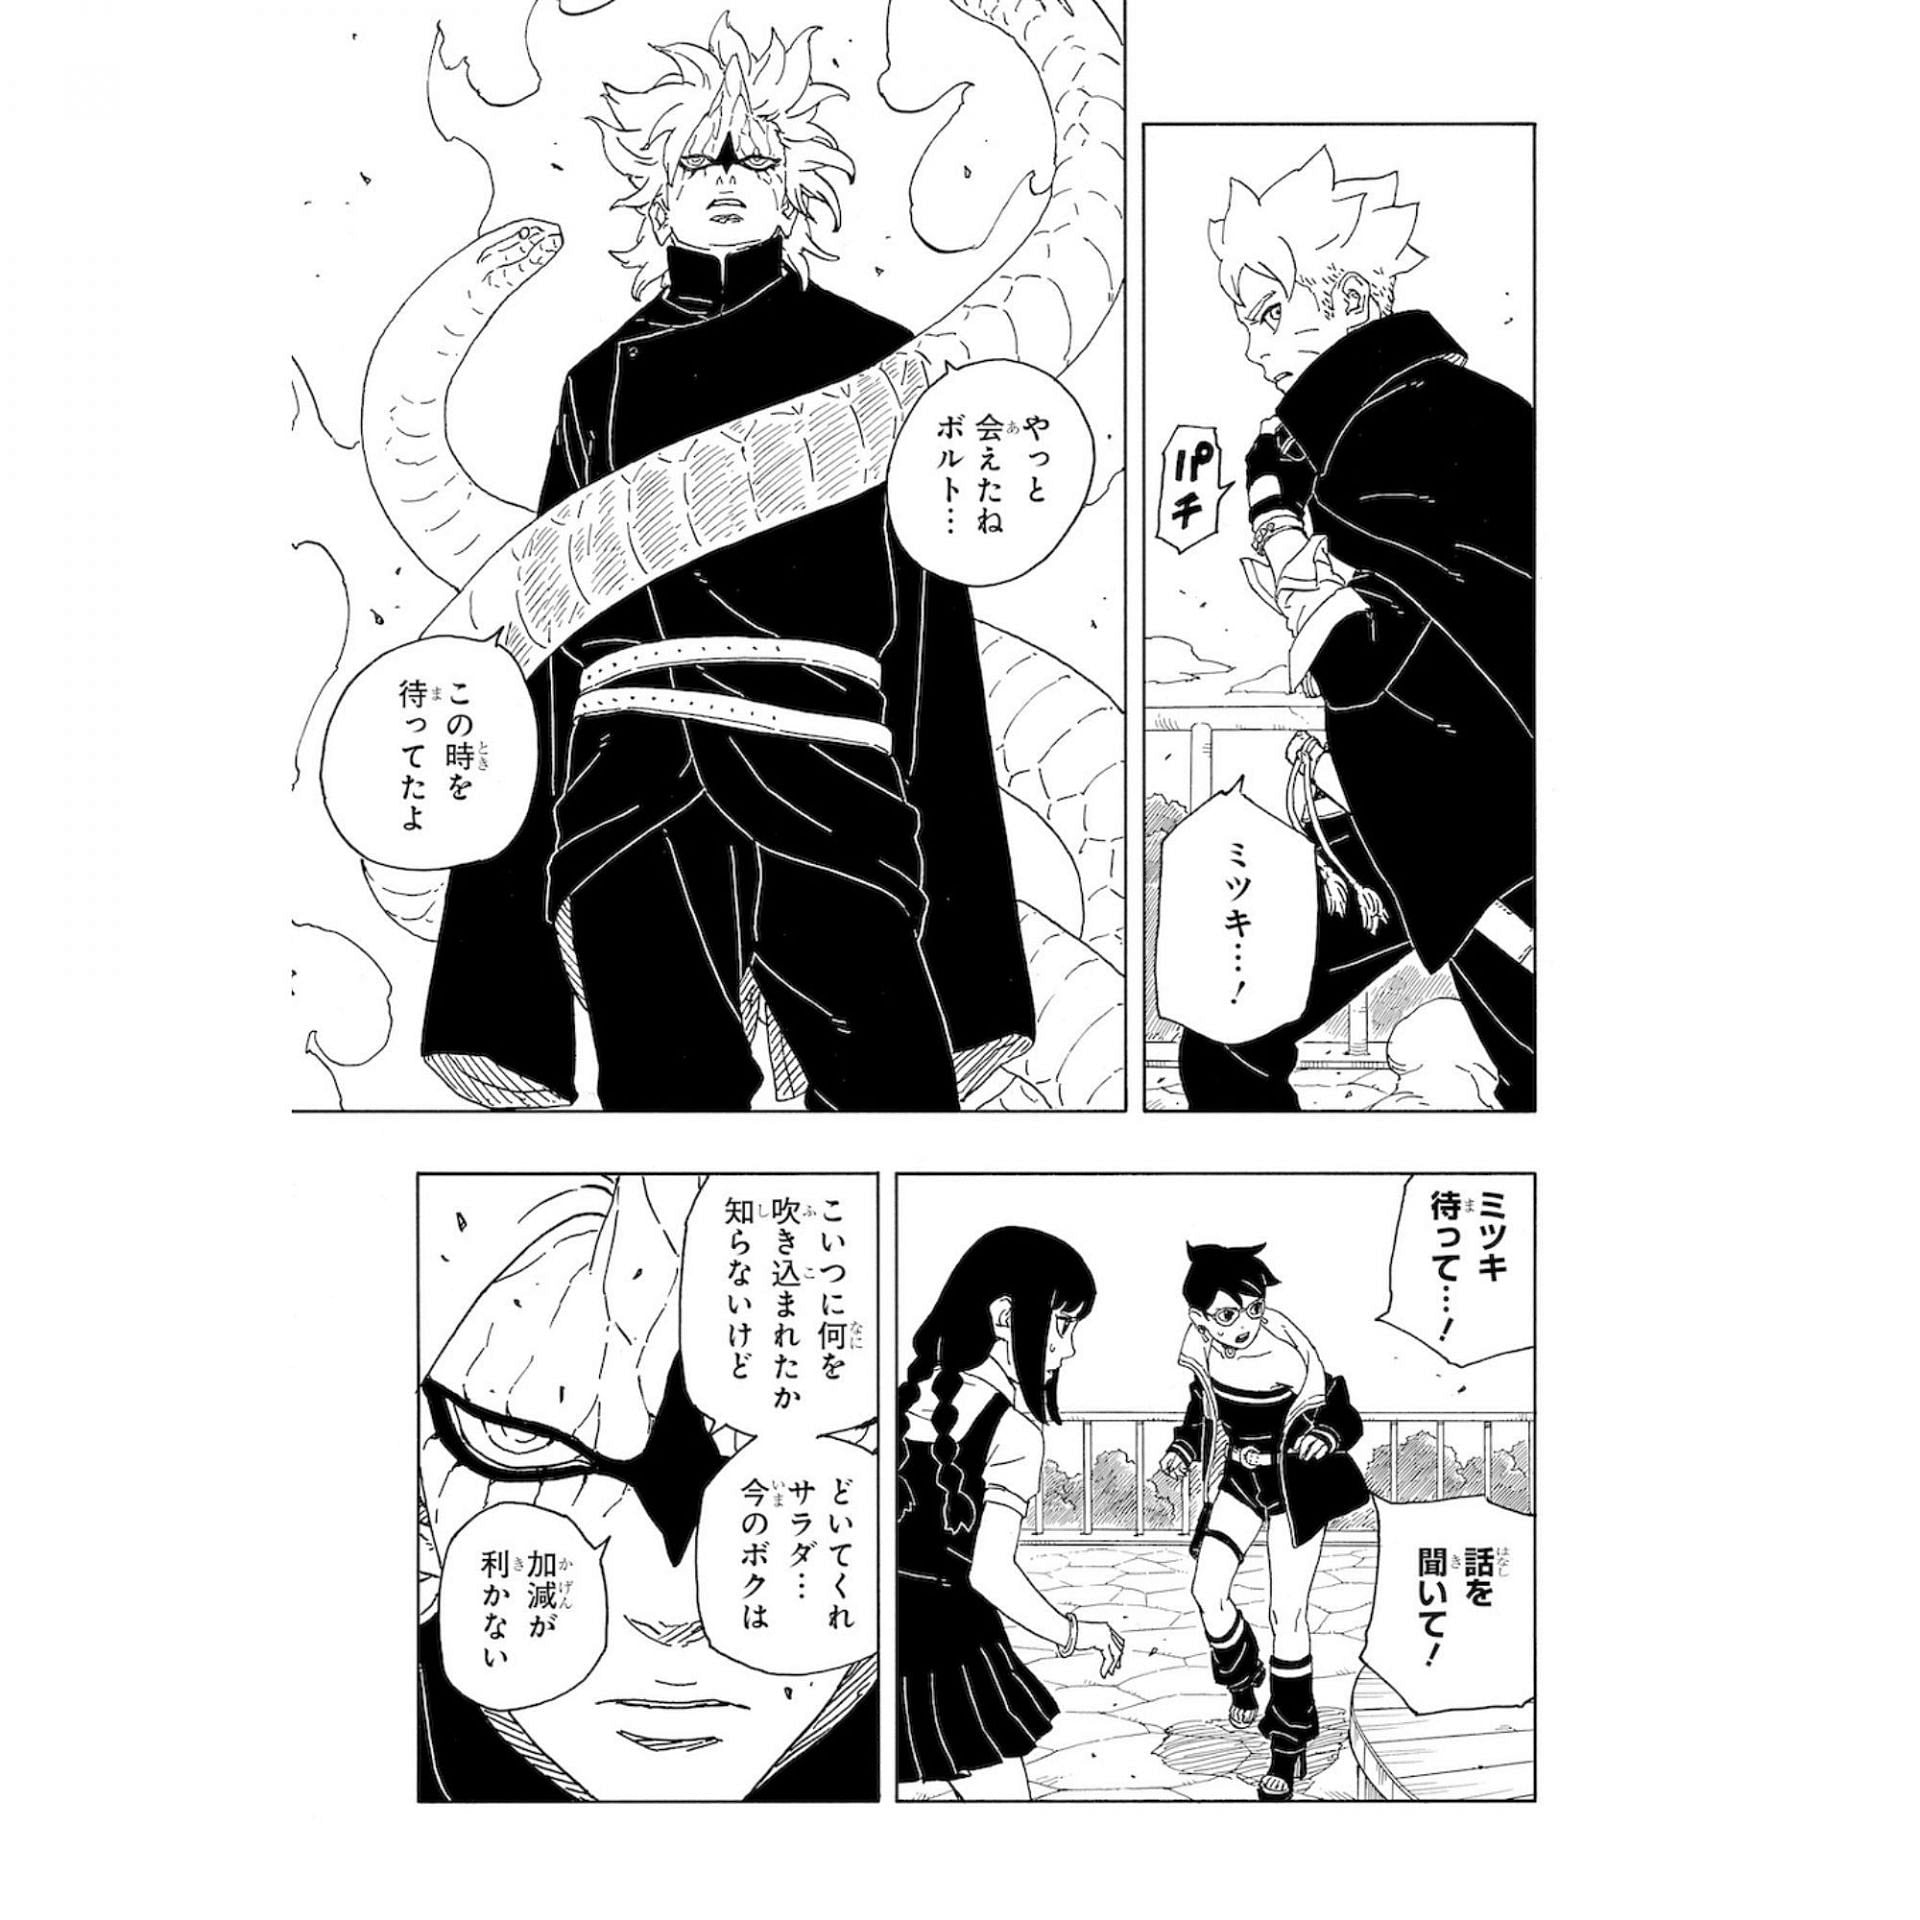 Mitsuki in his Sage Mode attacking Boruto (Image via Shueisha)